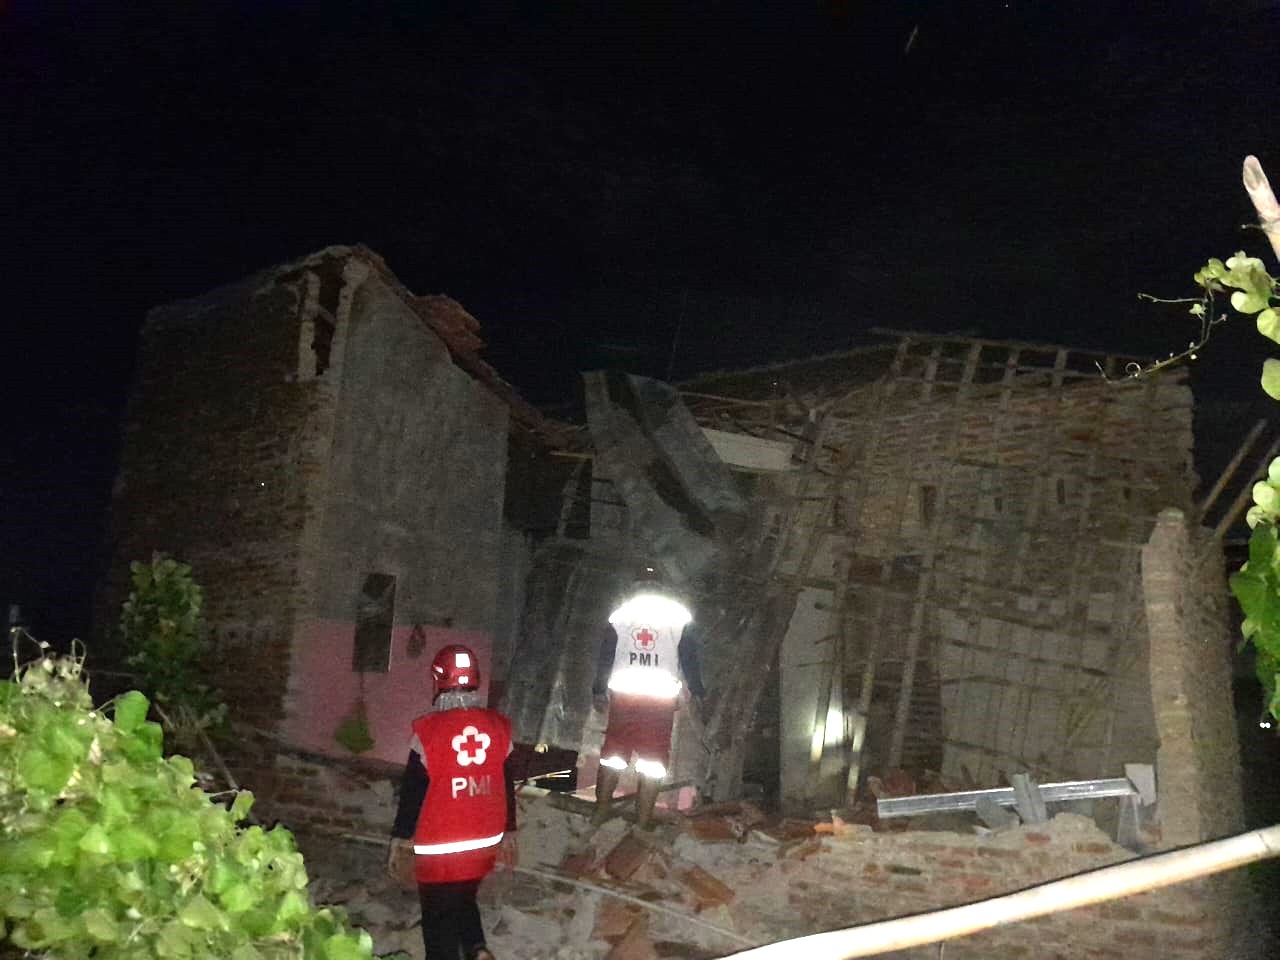 Rumah di Slawi Kabupaten Tegal Ambruk Diterjang Angin Kencang, Satu Keluarga Terpaksa Mengungsi 